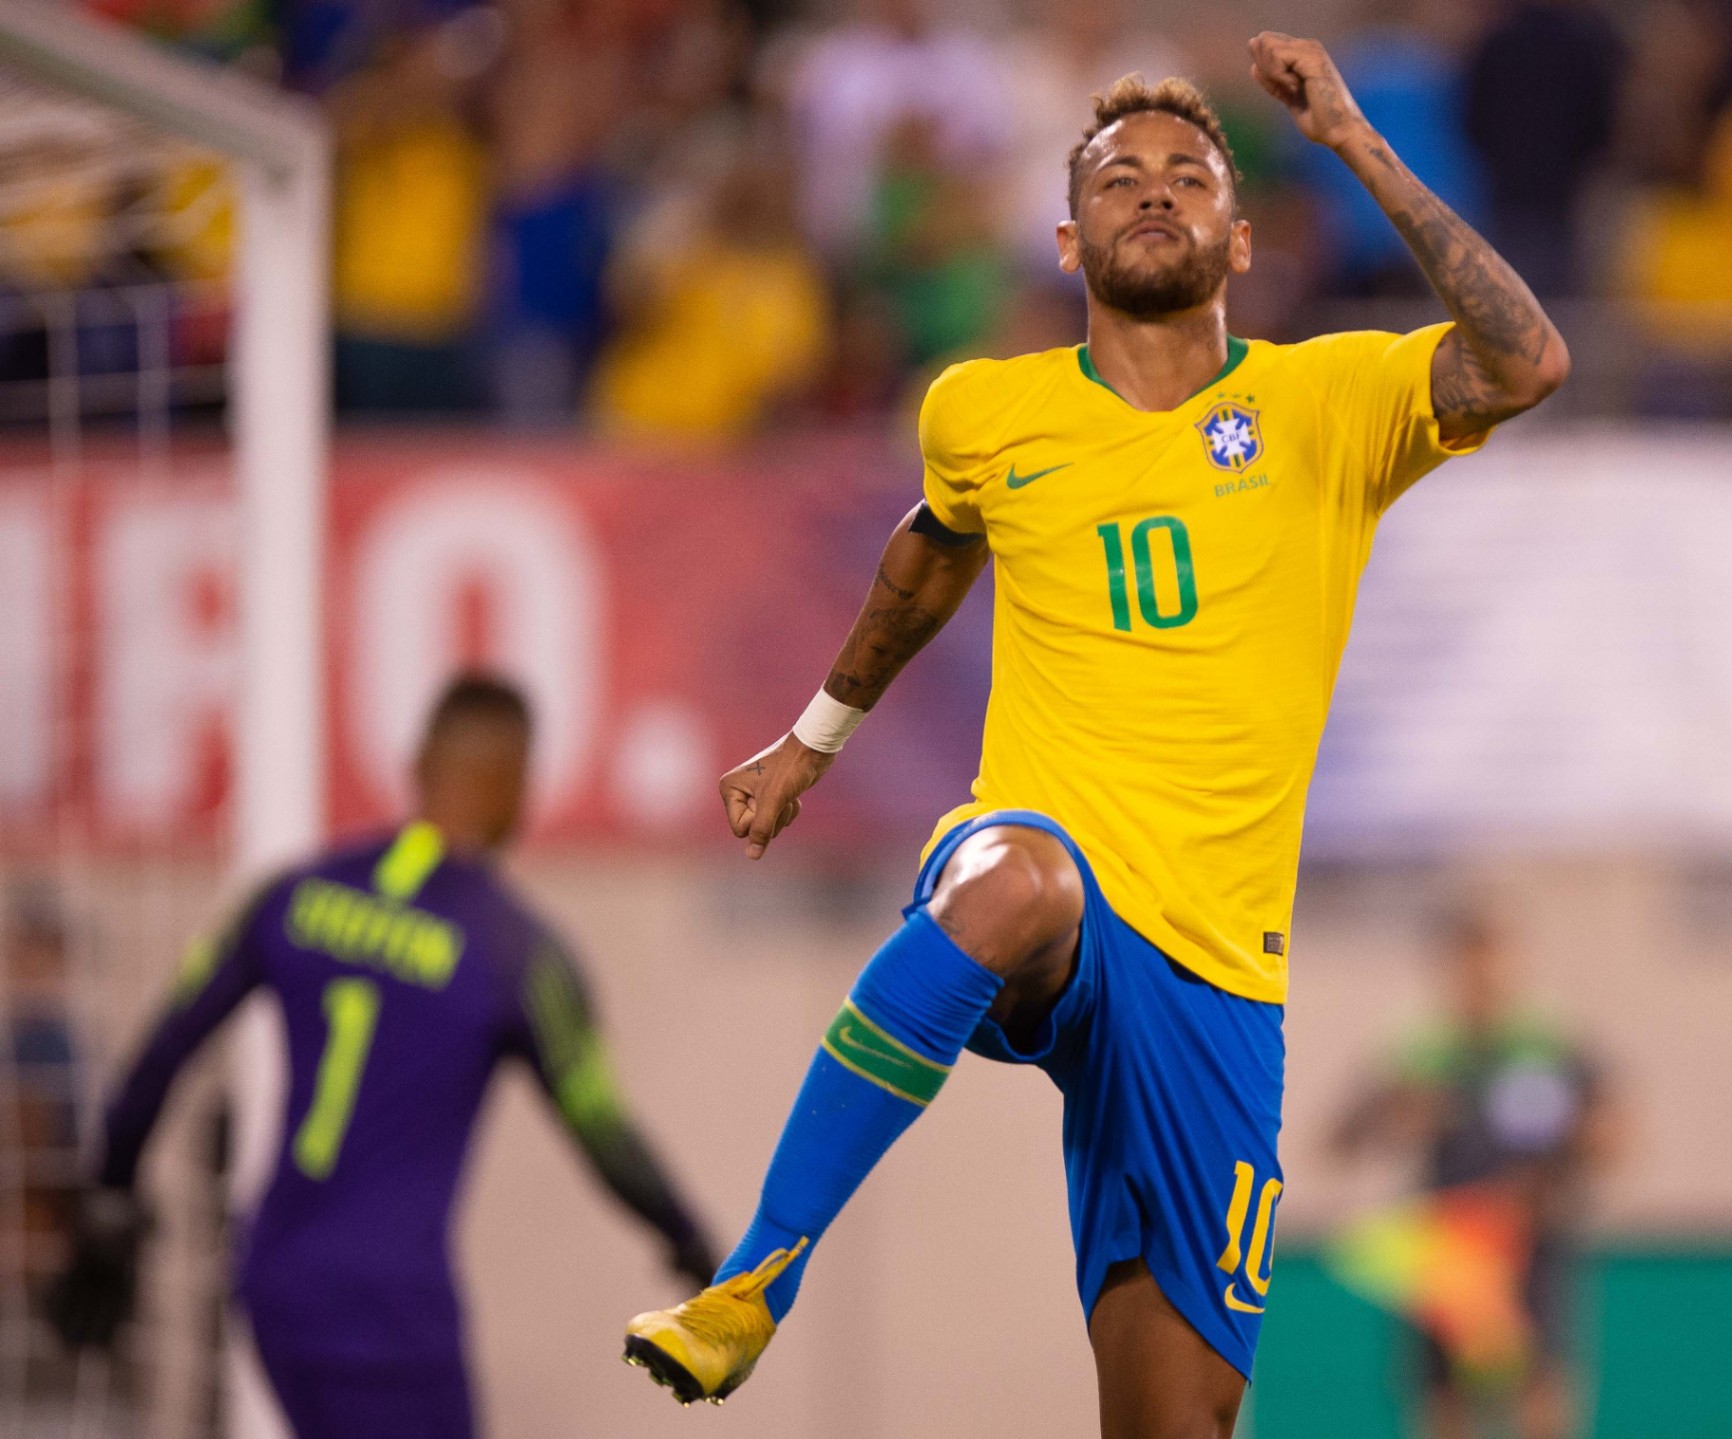 Descubra por quais times o Neymar já jogou